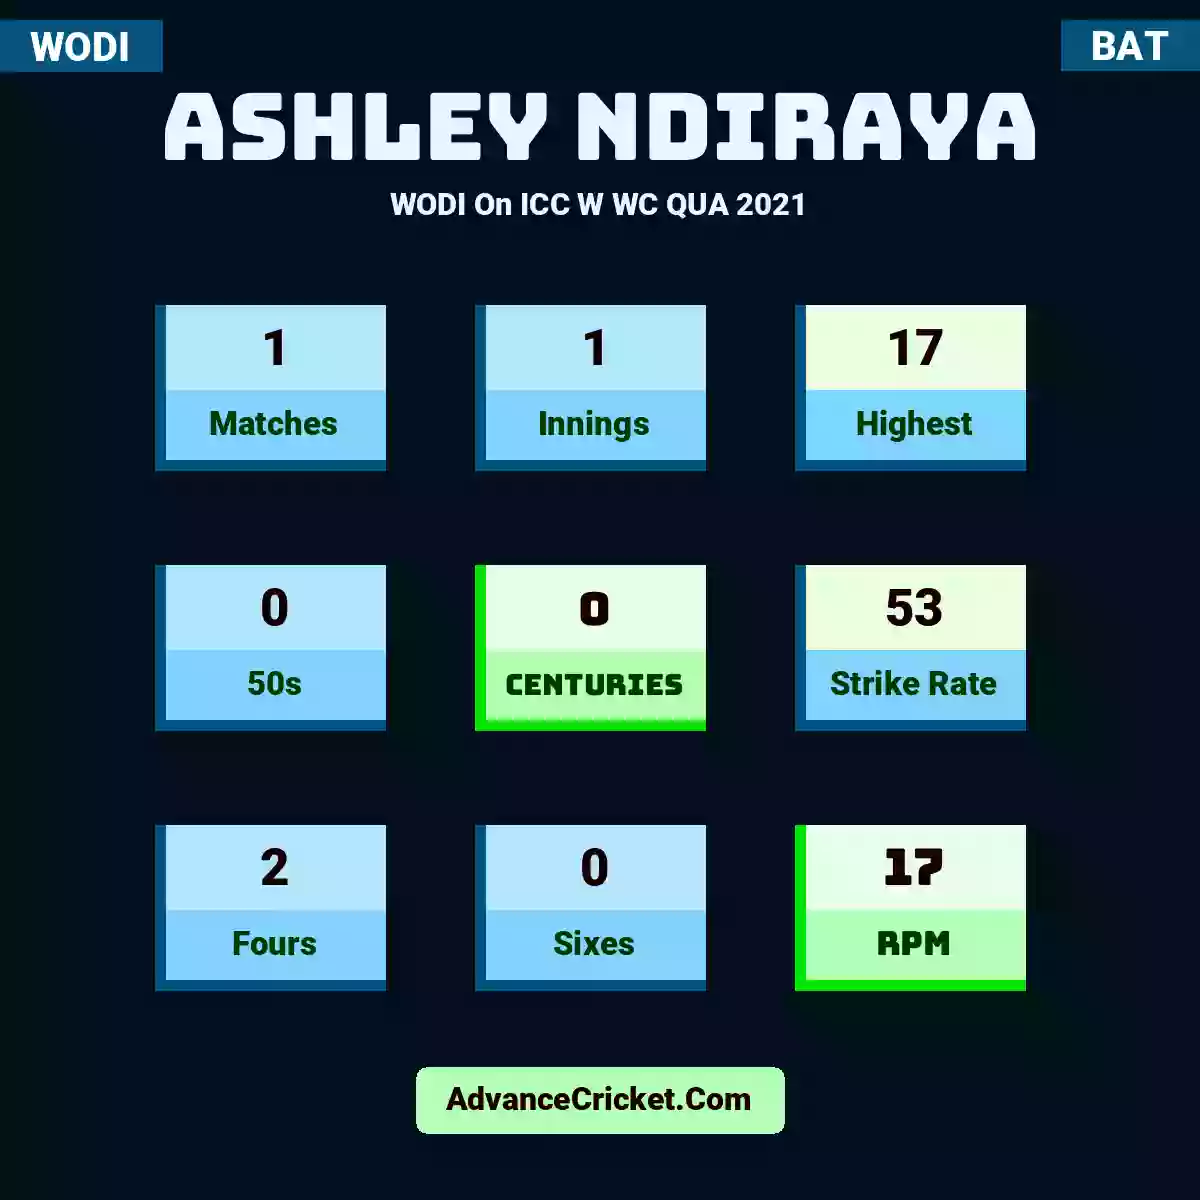 Ashley Ndiraya WODI  On ICC W WC QUA 2021, Ashley Ndiraya played 1 matches, scored 17 runs as highest, 0 half-centuries, and 0 centuries, with a strike rate of 53. A.Ndiraya hit 2 fours and 0 sixes, with an RPM of 17.